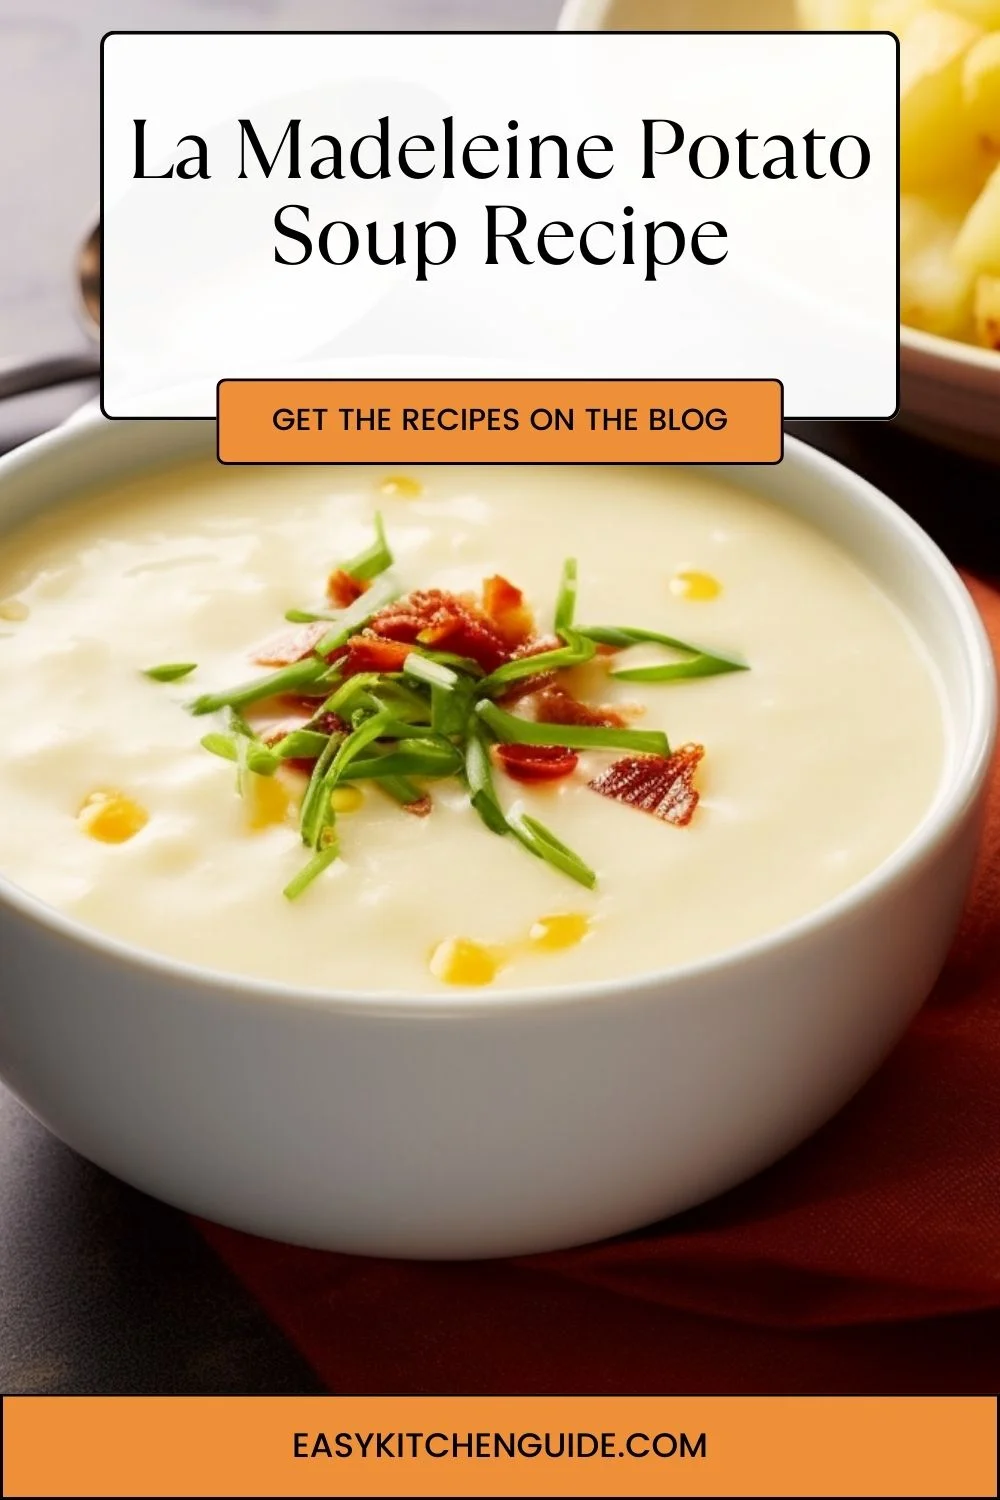 La Madeleine Potato Soup Recipe - Easy Kitchen Guide